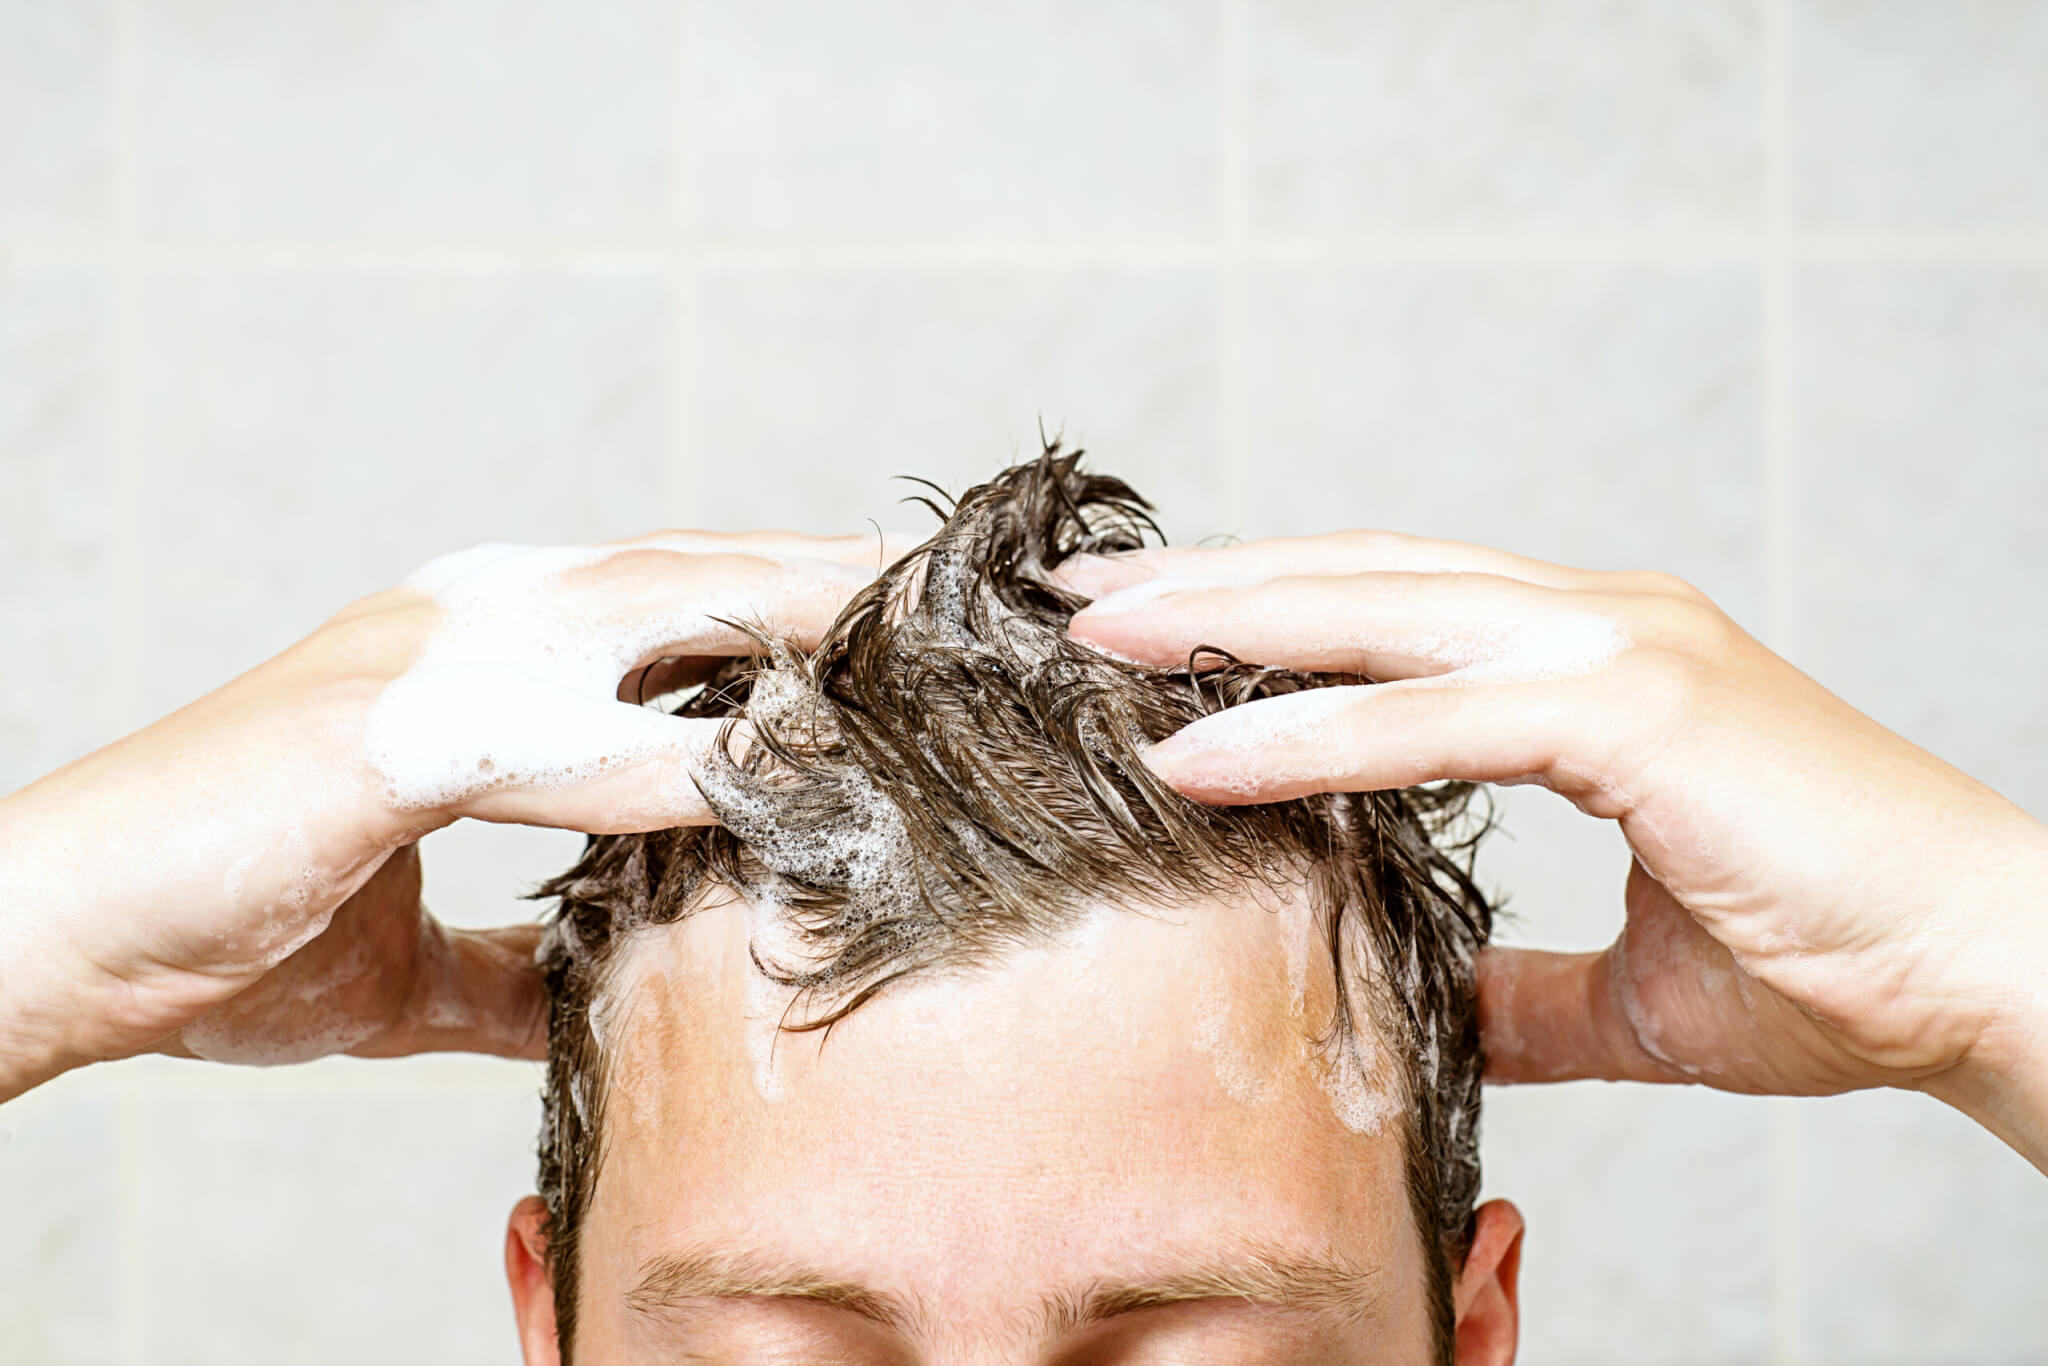 A man shampooing his hair